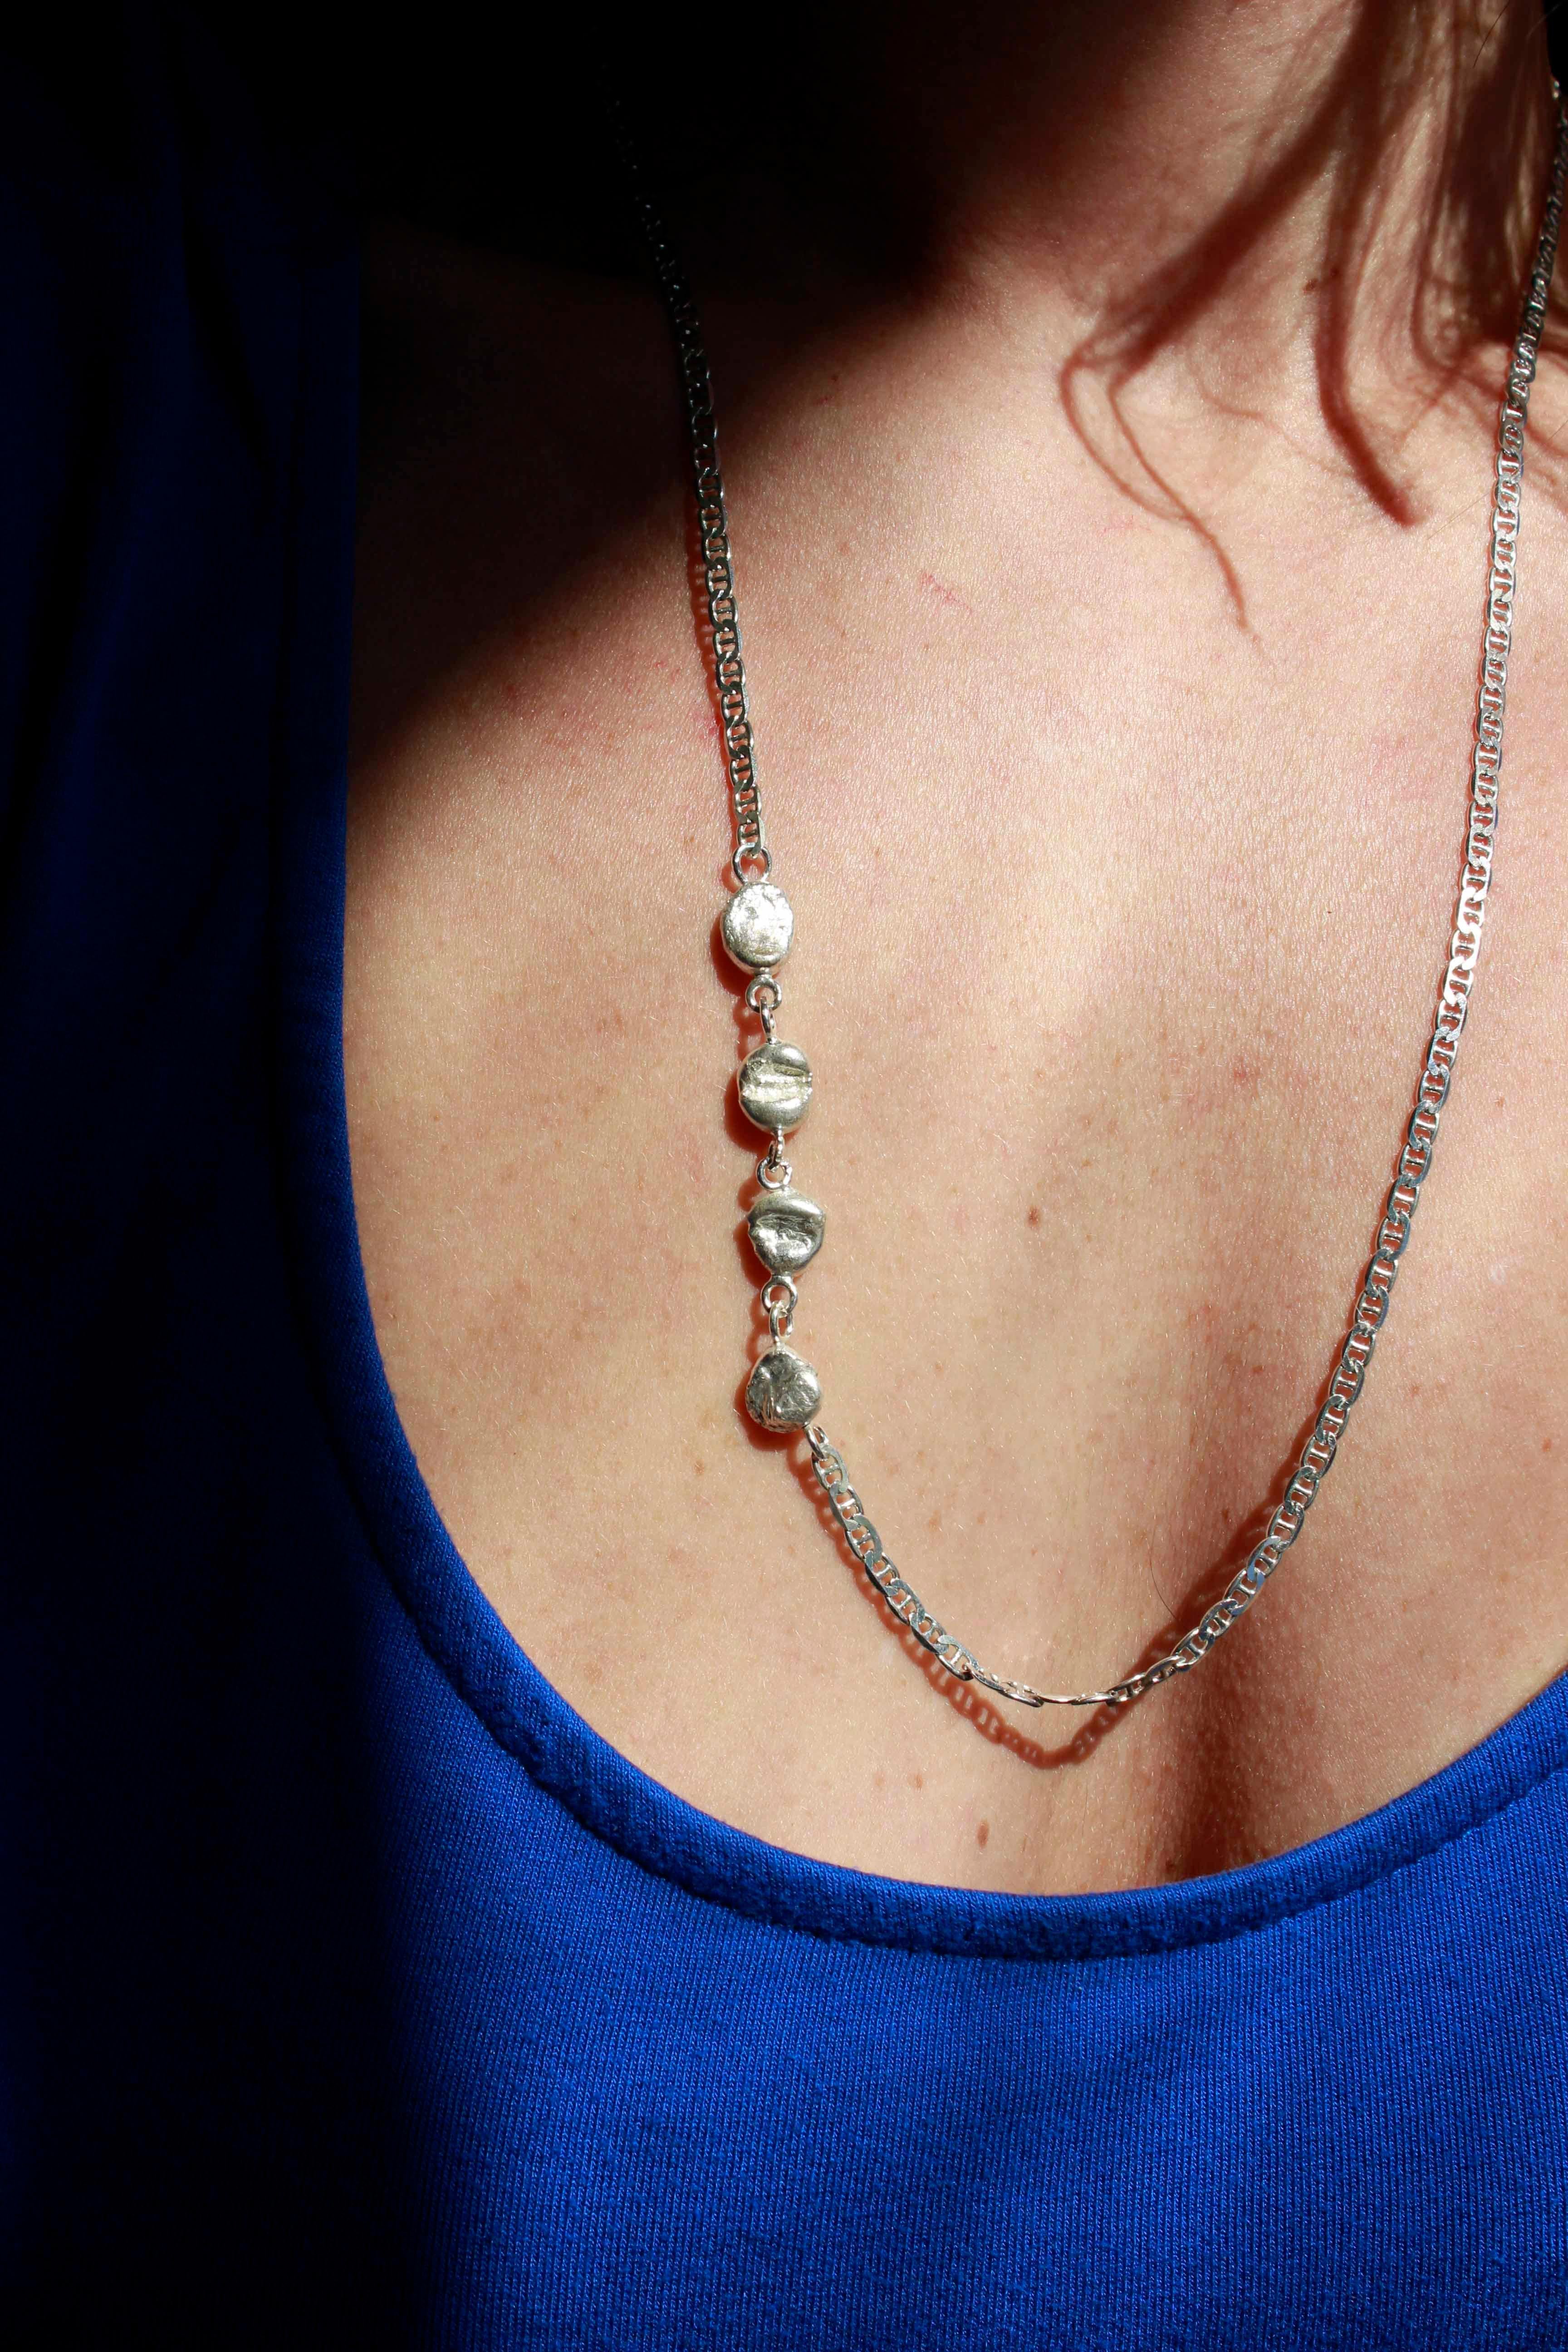 Le remarquable collier Athena se compose de 4 boules en argent reliées à la chaîne en argent.

Le collier mesure 63,5 cm de long.

Les petites boules organiques sont fabriquées à partir de nos déchets d'argent, ce qui signifie qu'elles sont 100 %